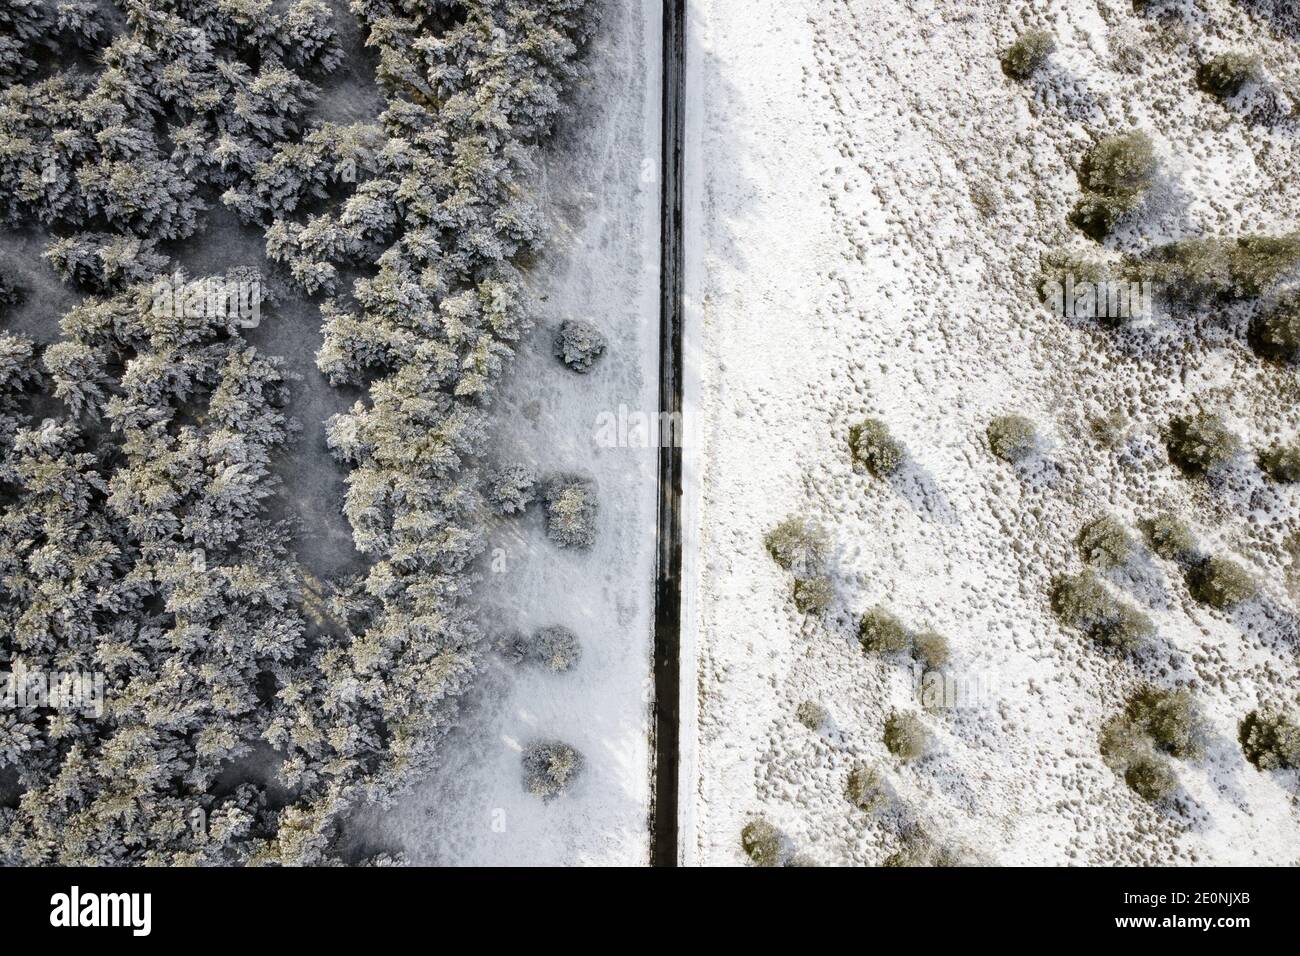 Vista aérea de la carretera cubierta de nieve vacía en el bosque de invierno. Foto de alta calidad. Foto de stock